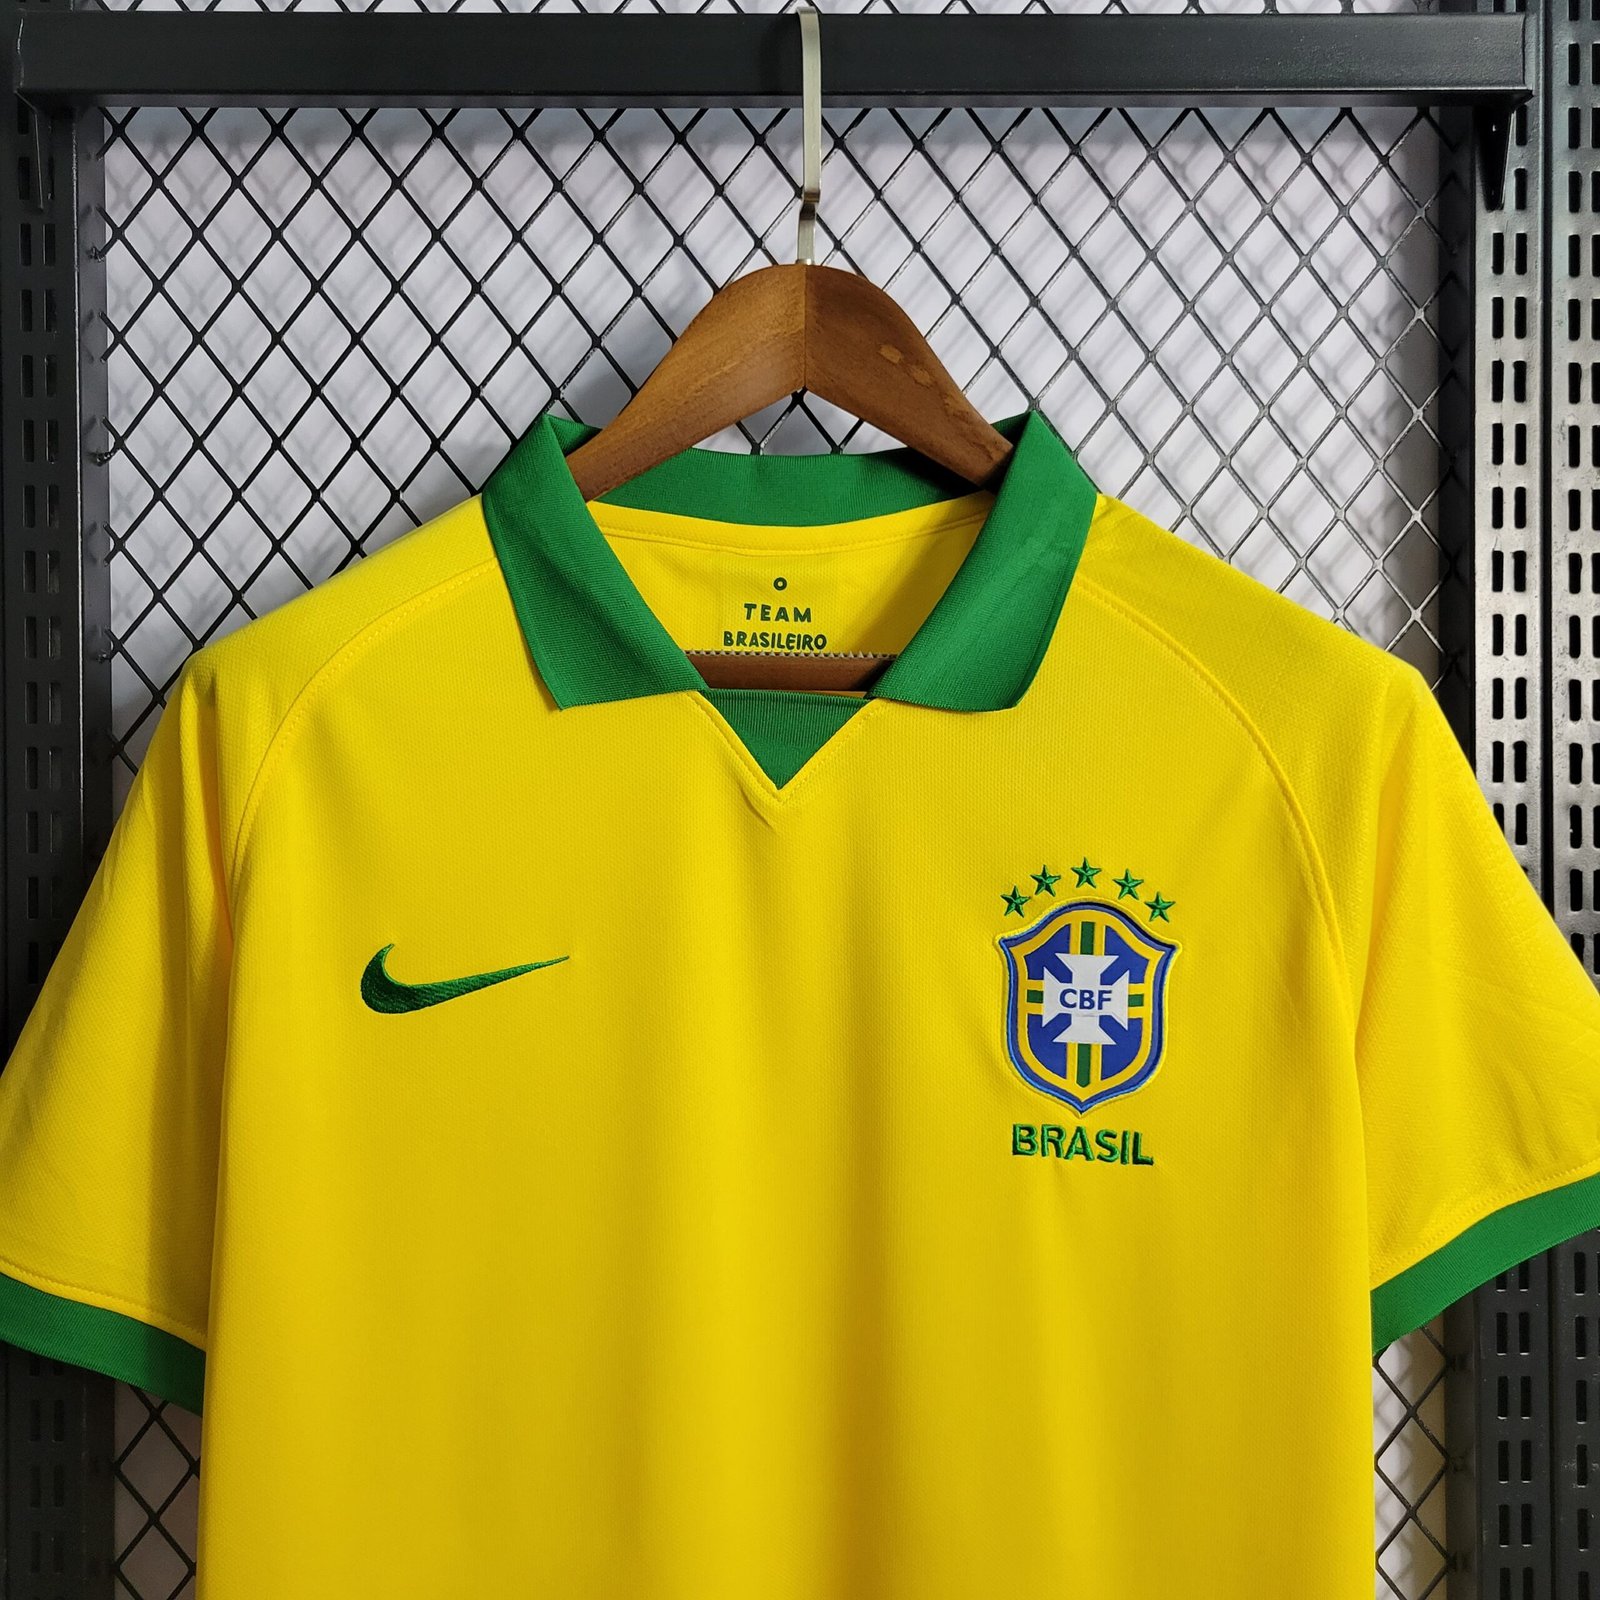 https://kssports23.com.br/wp-content/uploads/2022/08/camisa-selecao-brasileira-copa-america-2019-2020-amarela-versao-torcedor-8-scaled.jpg